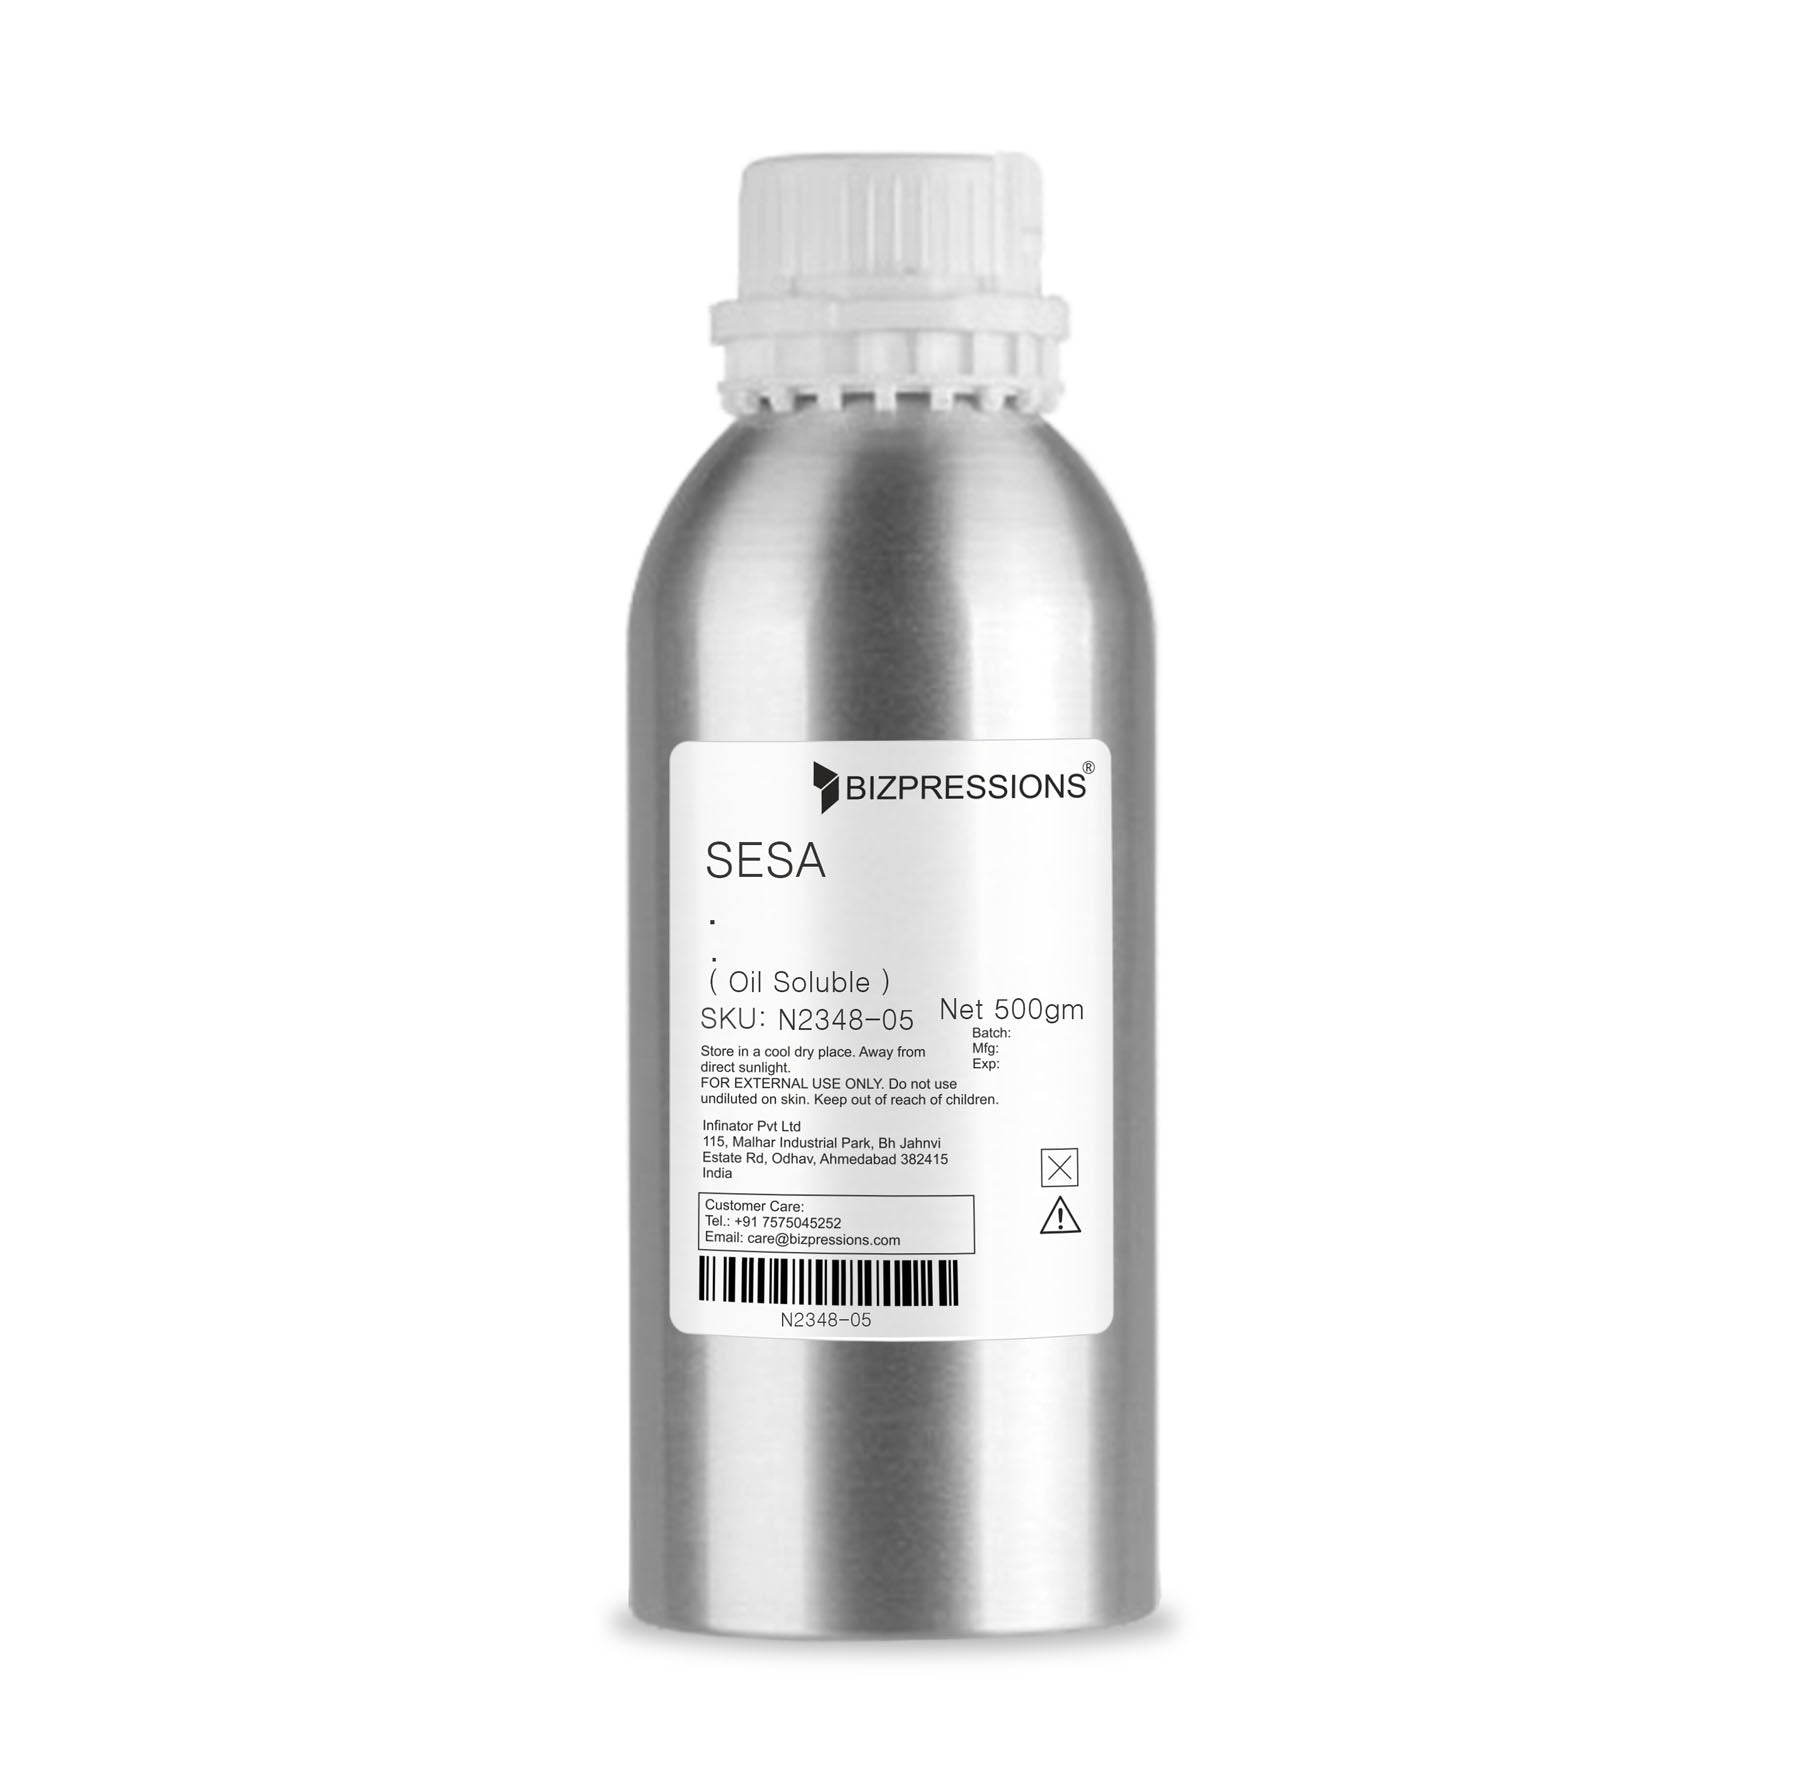 SESA - Fragrance ( Oil Soluble ) - 500 gm